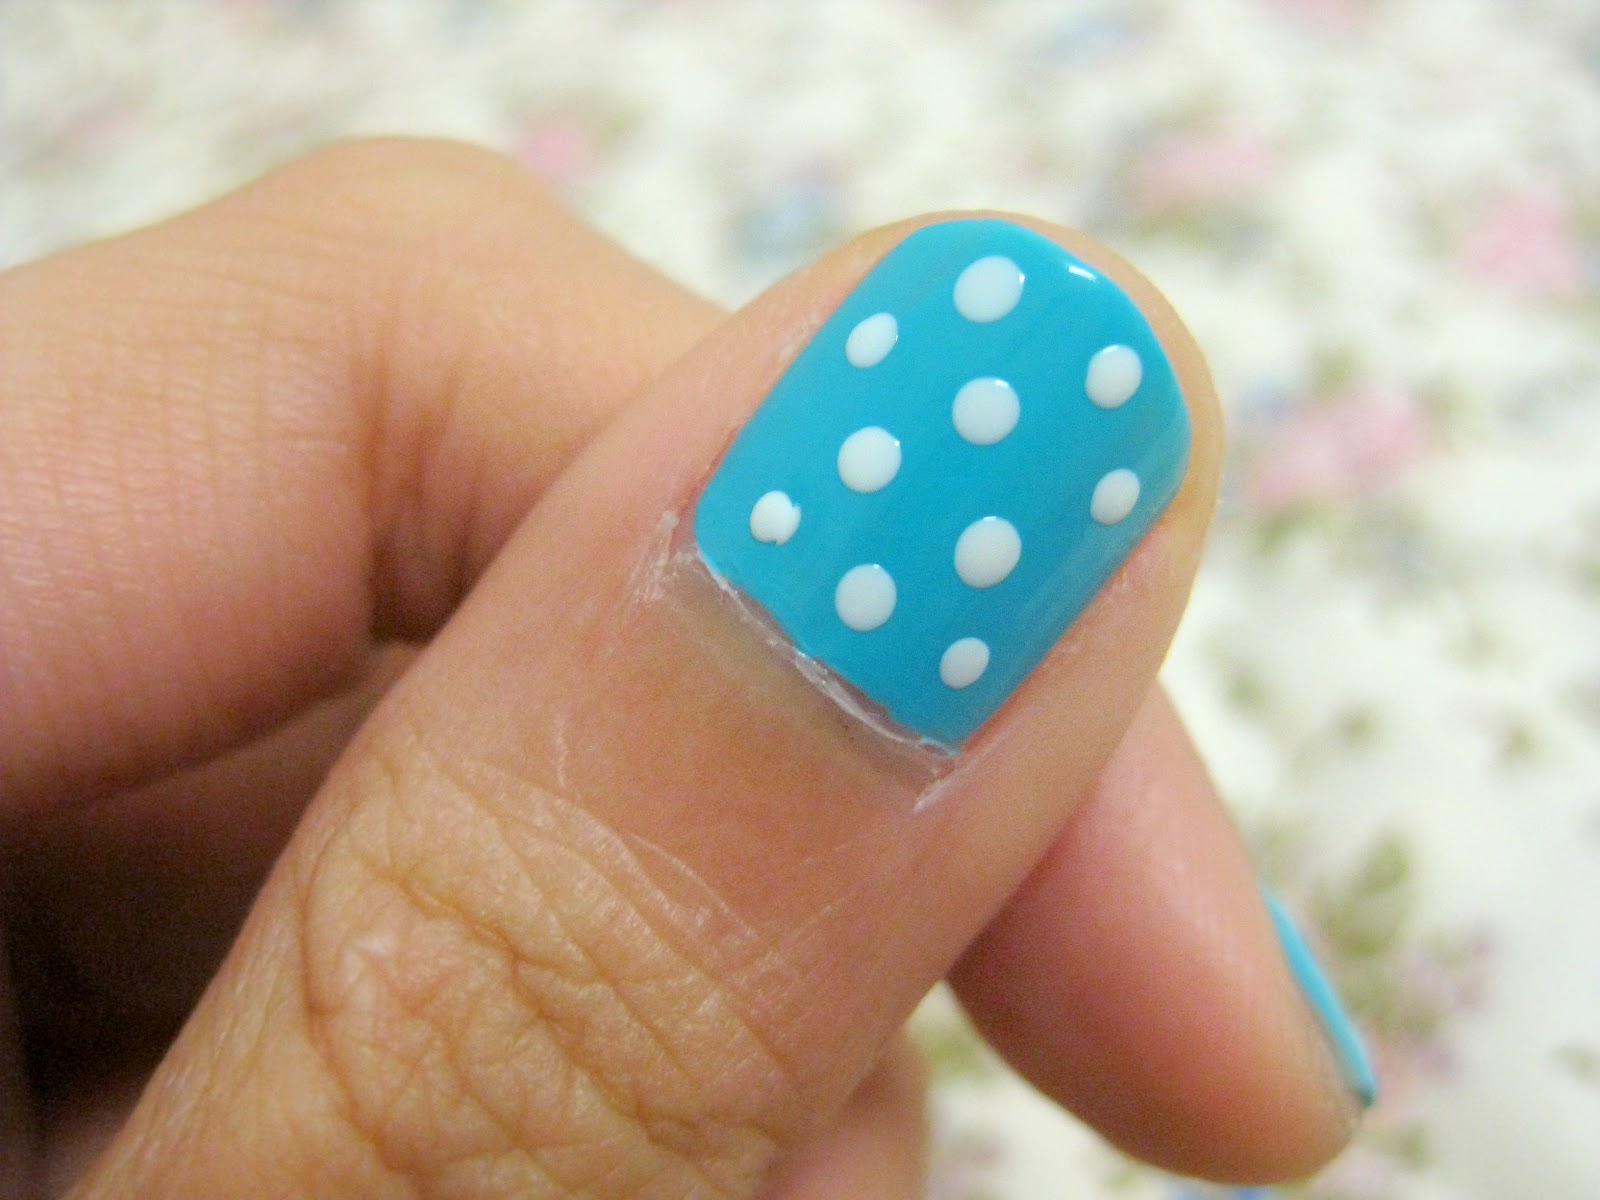 3. DIY Polka Dot Nails - wide 2